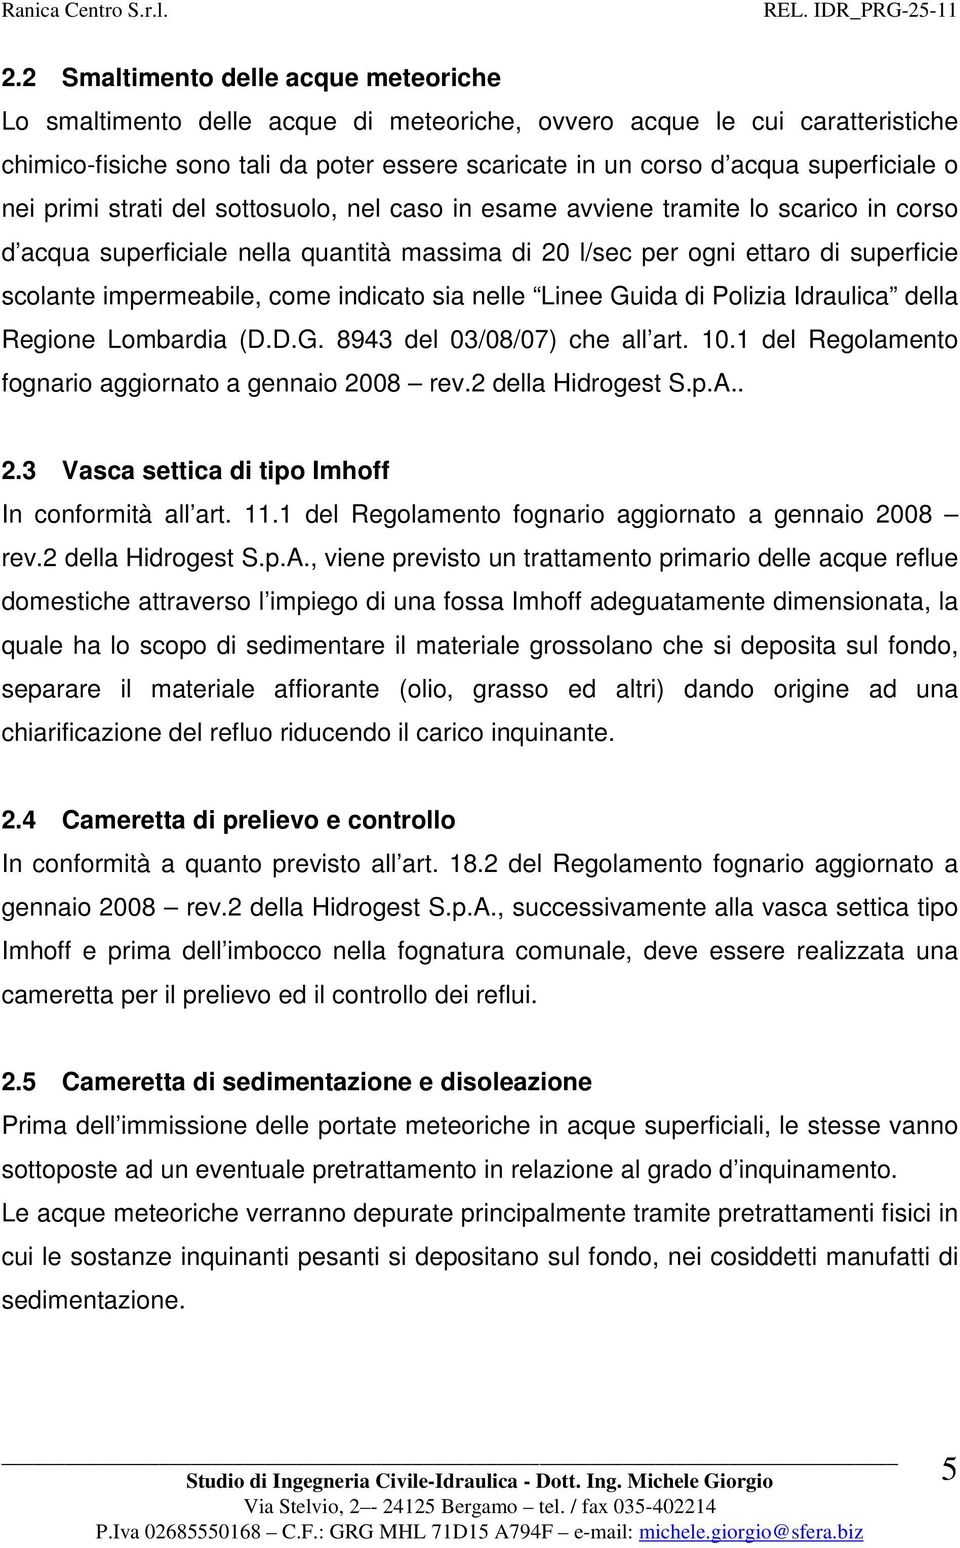 impermeabile, come indicato sia nelle Linee Guida di Polizia Idraulica della Regione Lombardia (D.D.G. 8943 del 03/08/07) che all art. 10.1 del Regolamento fognario aggiornato a gennaio 2008 rev.